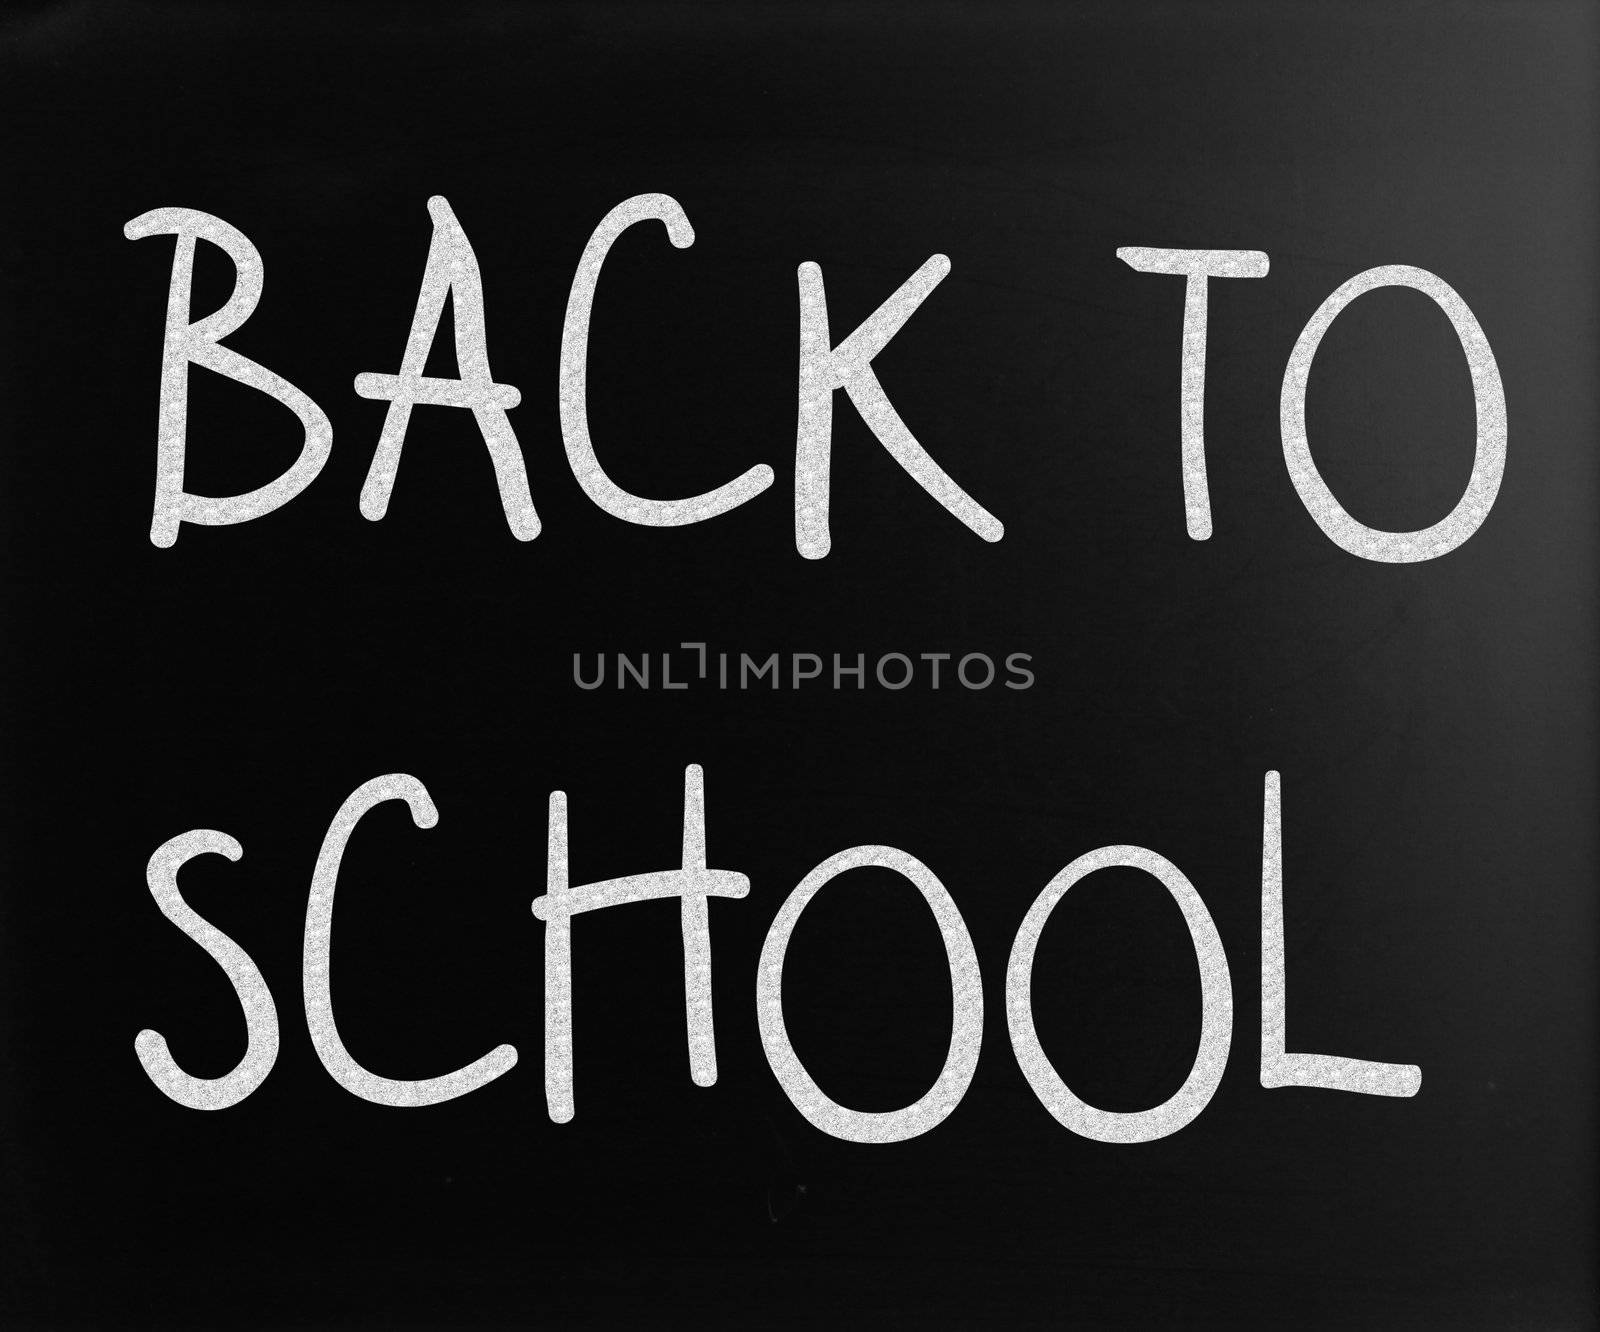 "Back to school" handwritten with white chalk on a blackboard